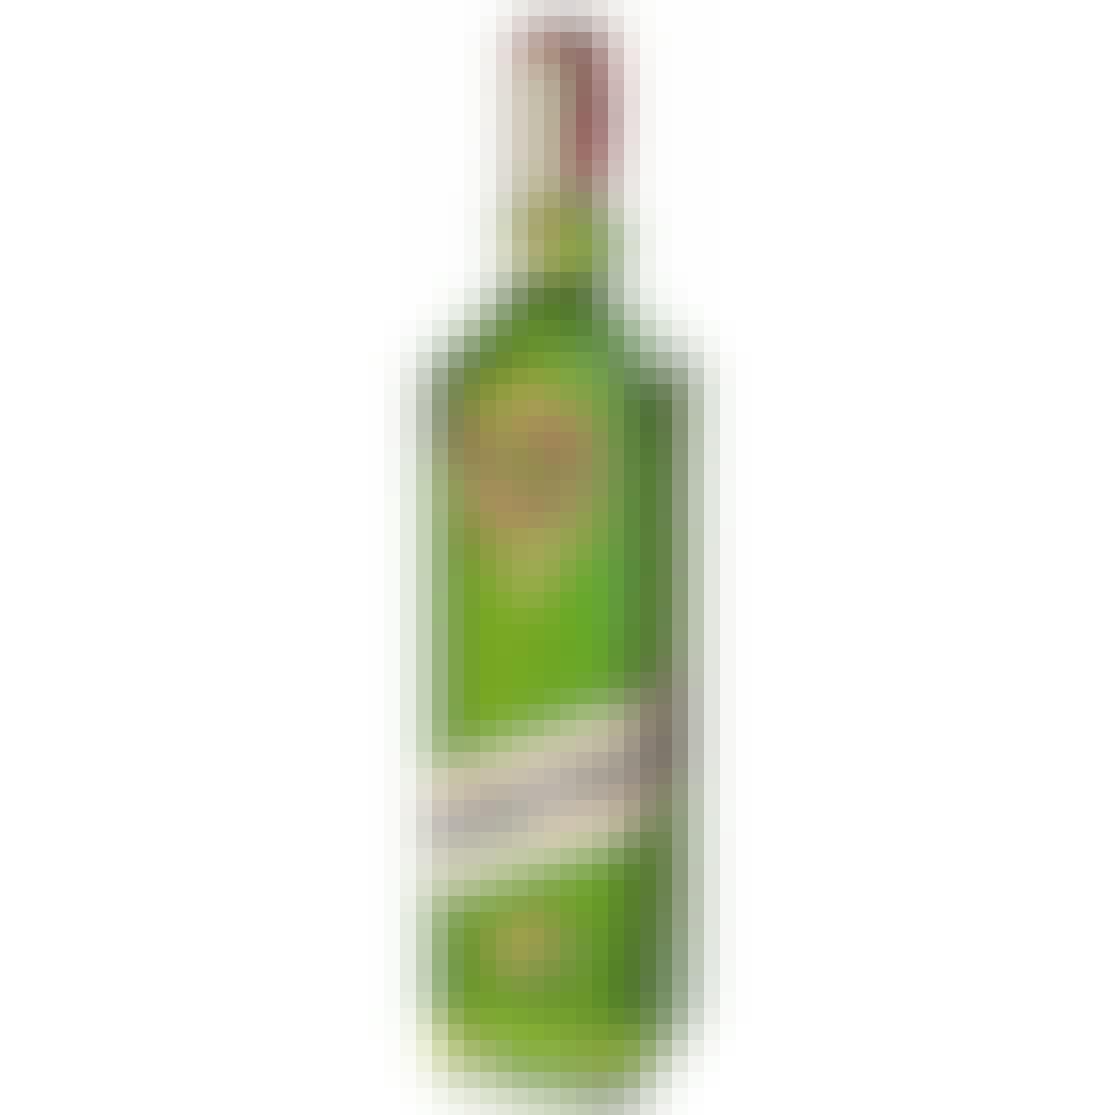 Agwa de Bolivia Coca Herbal Liqueur 750ml